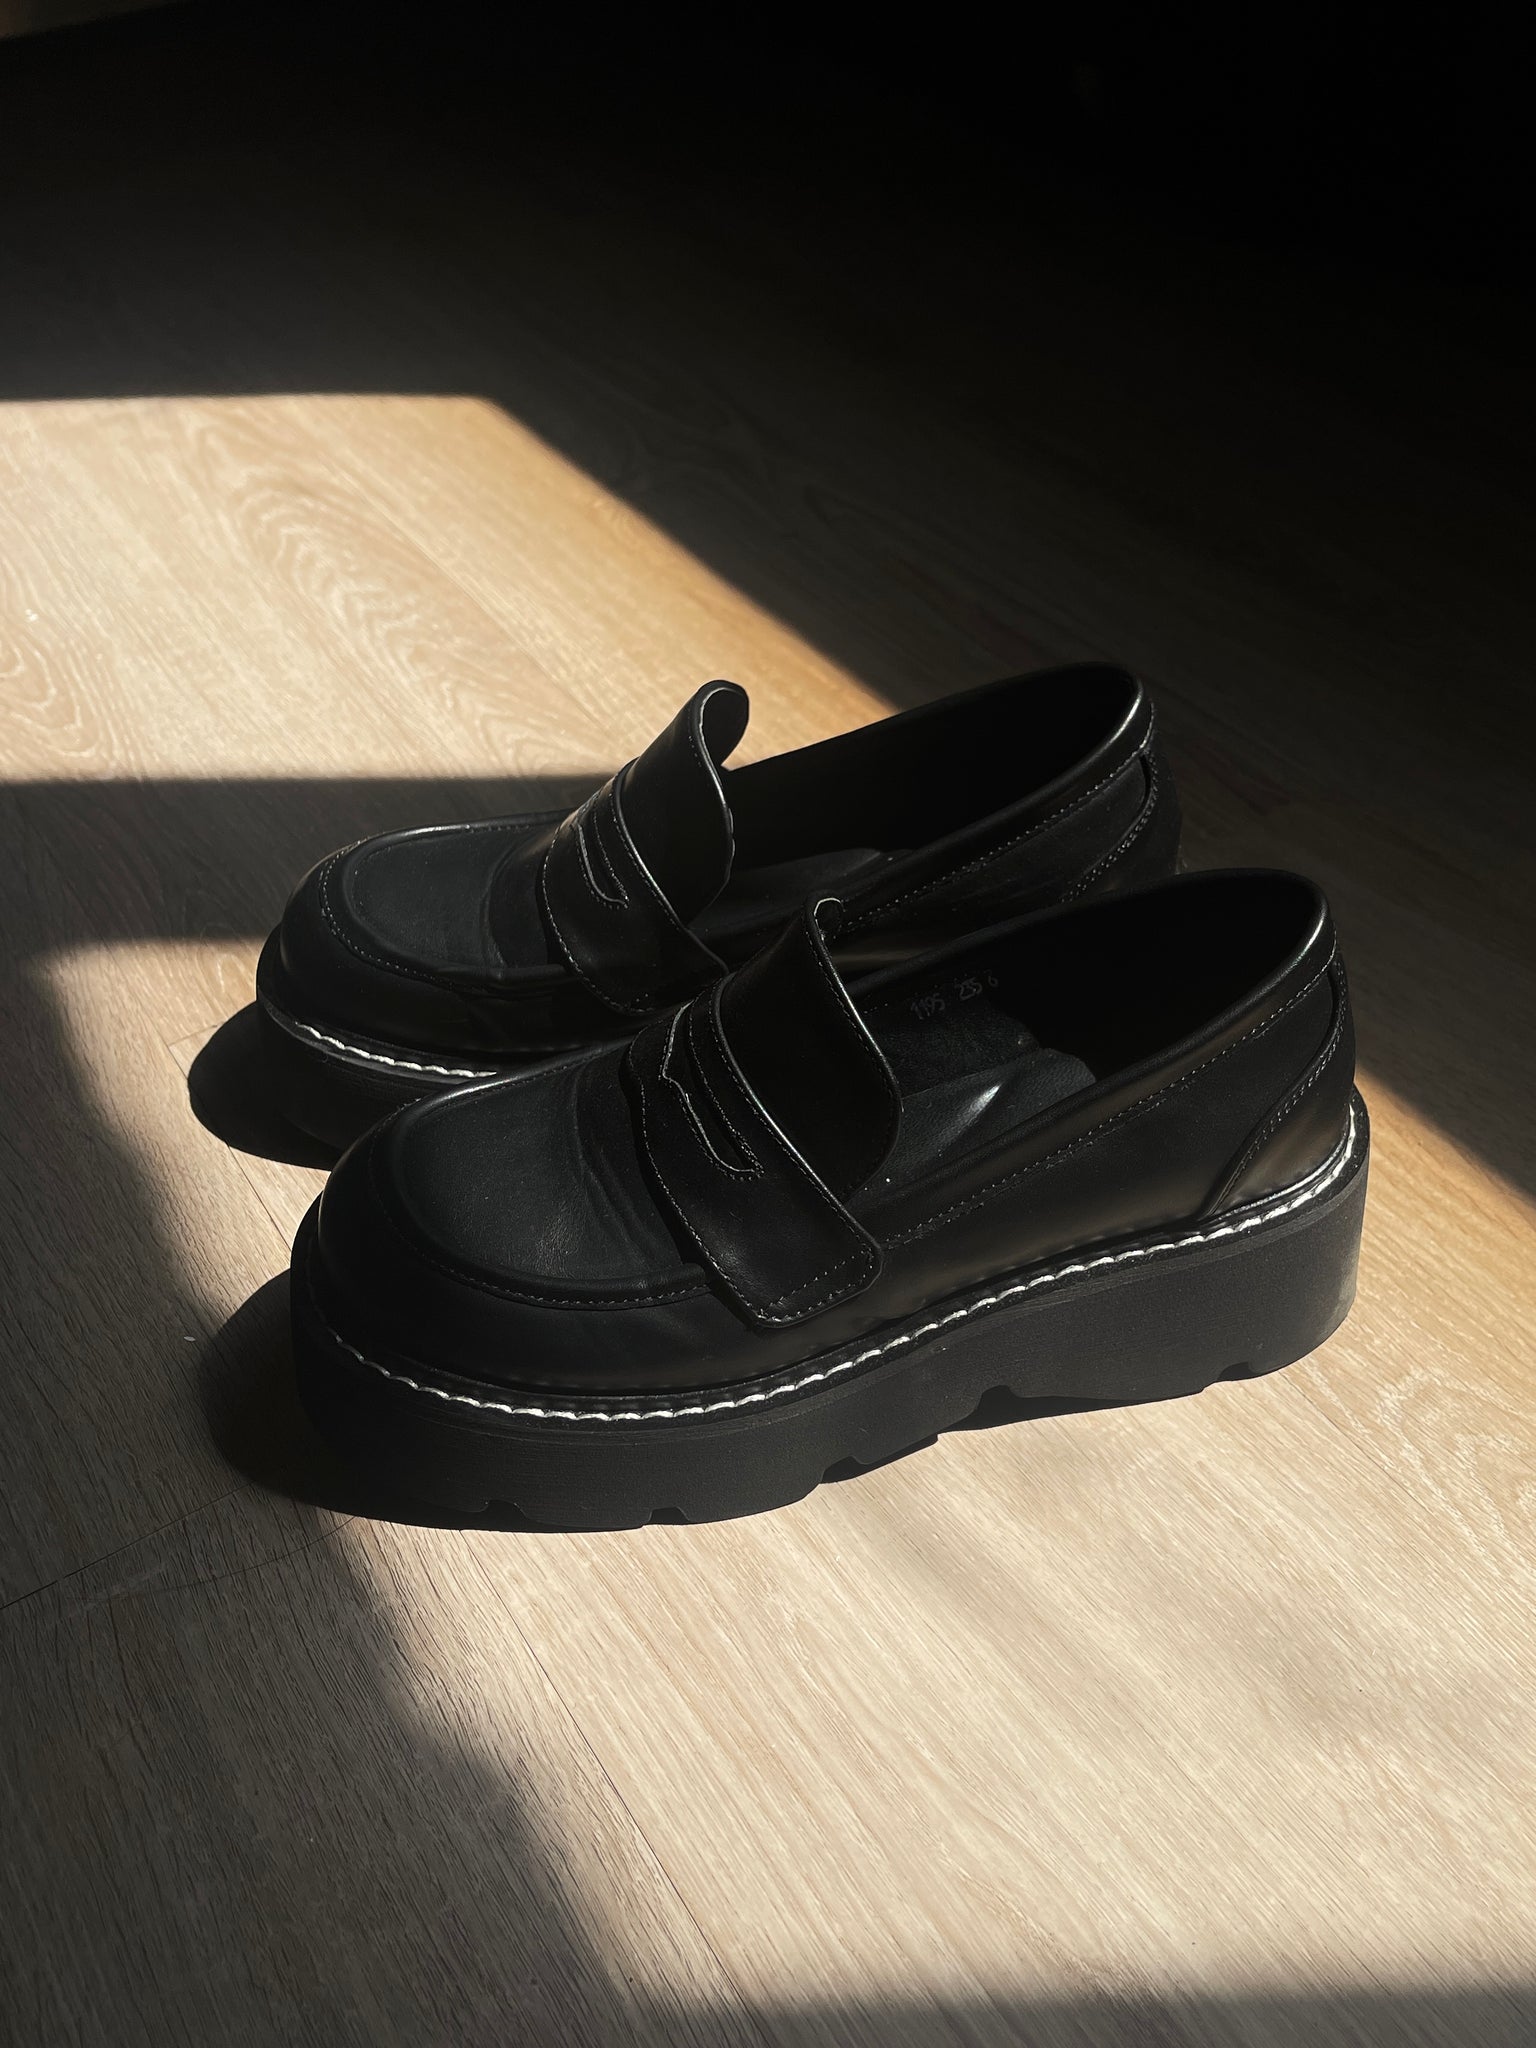 platform loafers